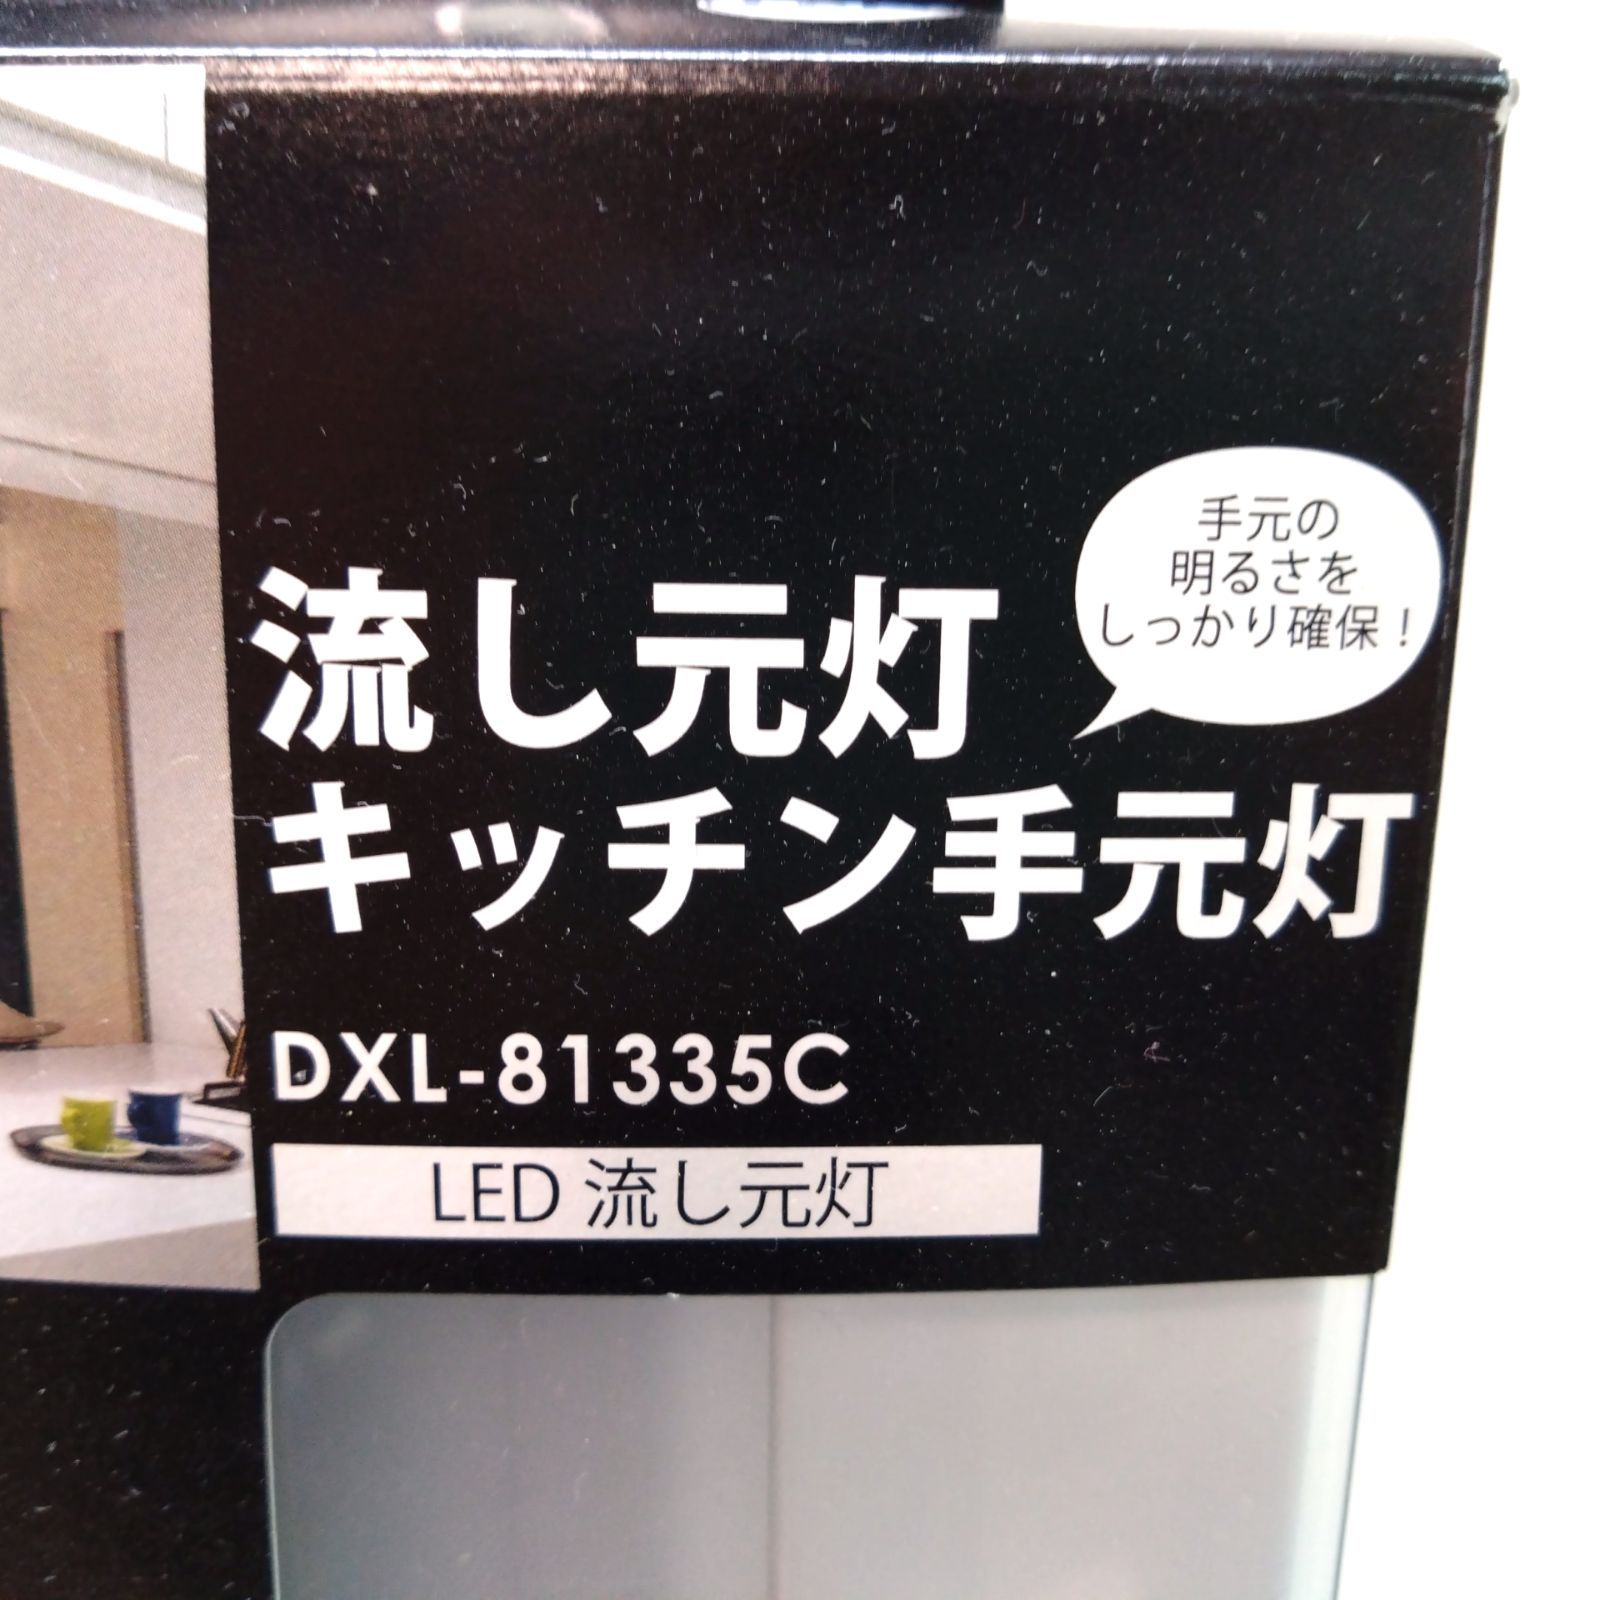 411 【新品未使用】DAIKO ダイコー キッチンライト DXL-81335C